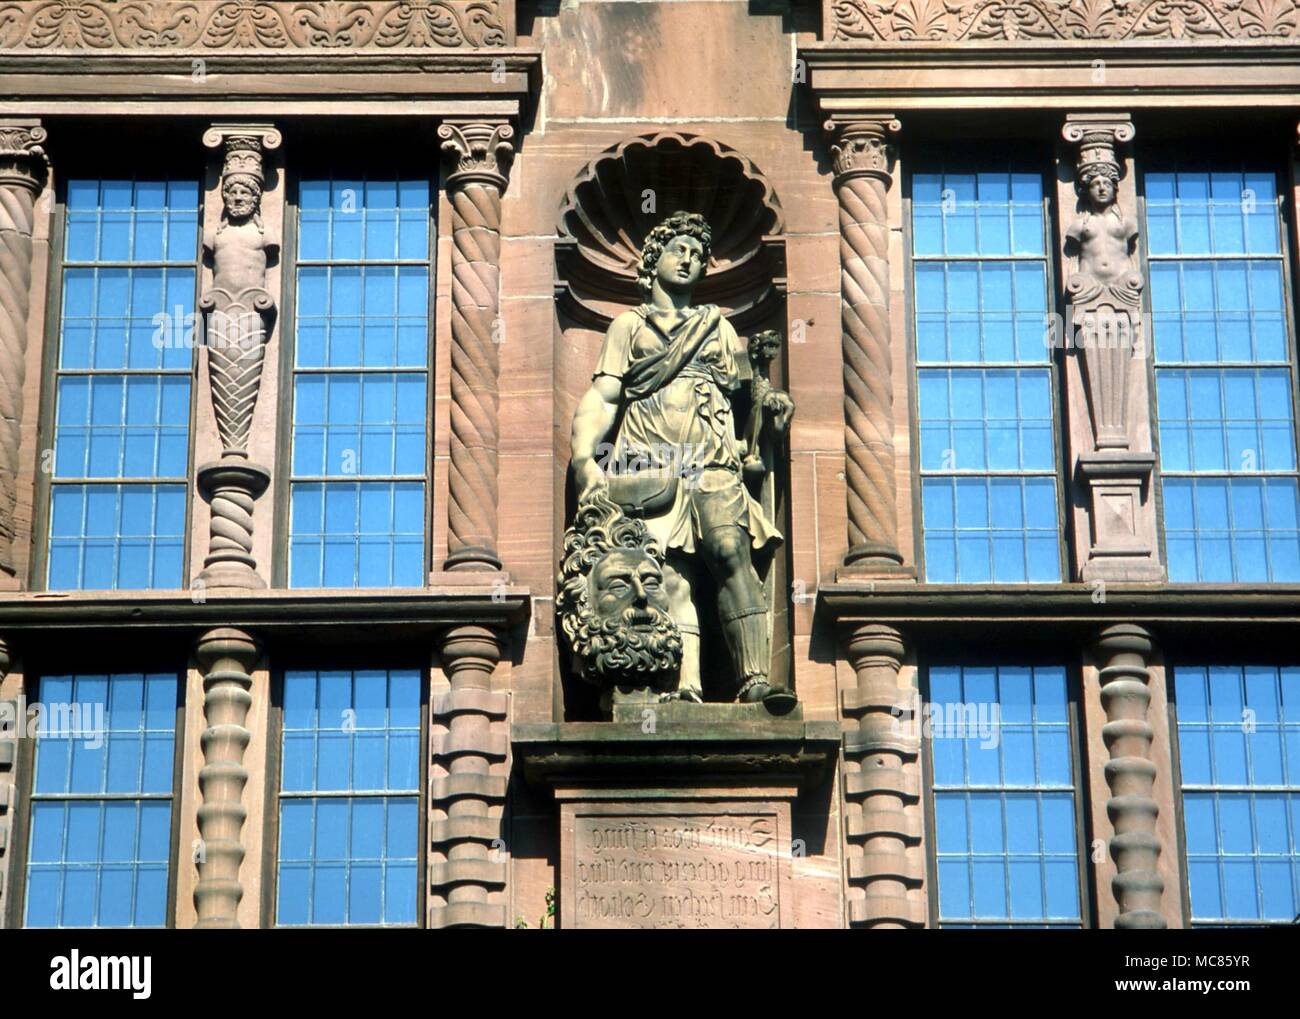 CHRISTIAN David con la cabeza de Goliat, y el símbolo de león. Estatua en la fachada del castillo medieval en Heidelberg, Alemania Foto de stock